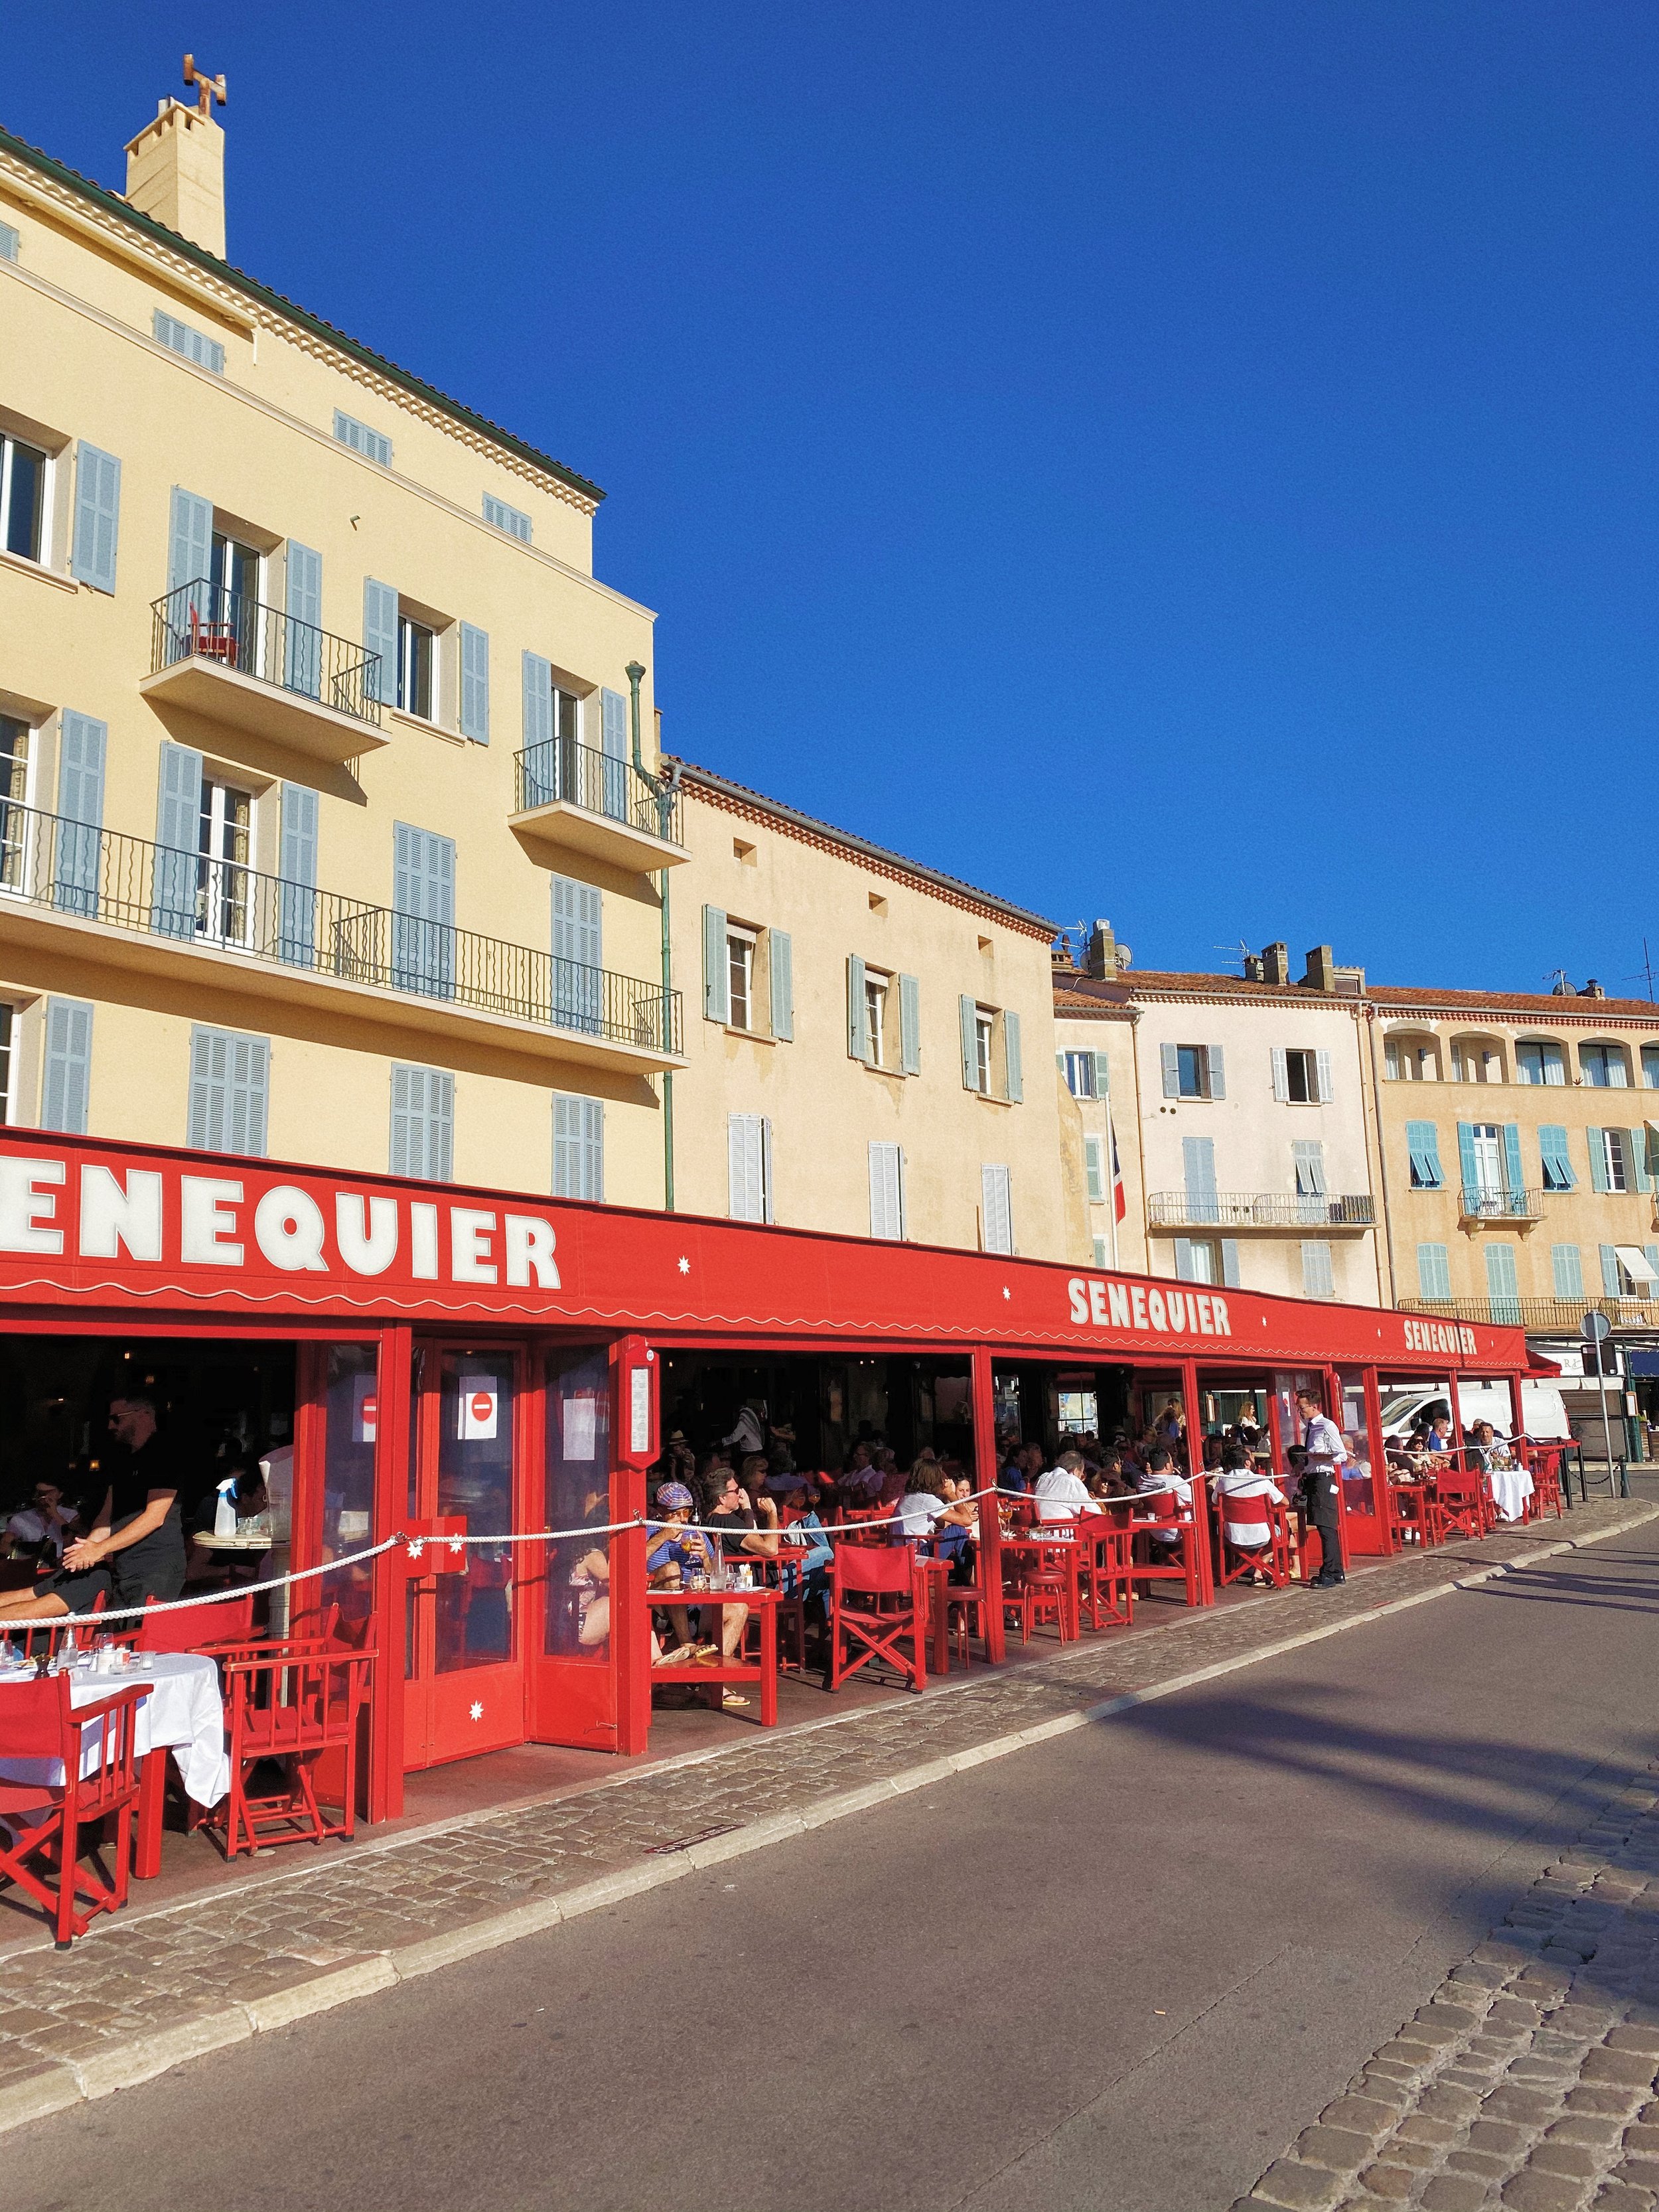 Louis Vuitton's St. Tropez Restaurant Comes With Mediterranean